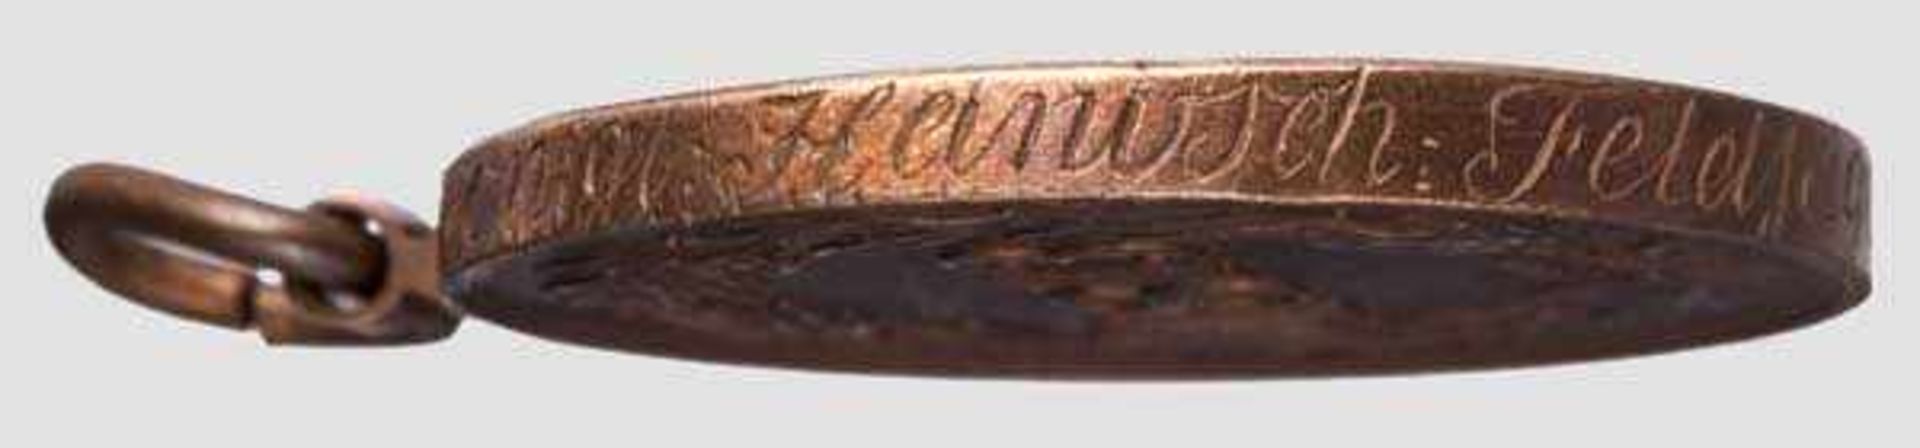 Kriegsdenkmünze für die Freiwilligen von 1813 Aus der Bronze eroberter französischer Geschütze - Bild 2 aus 2